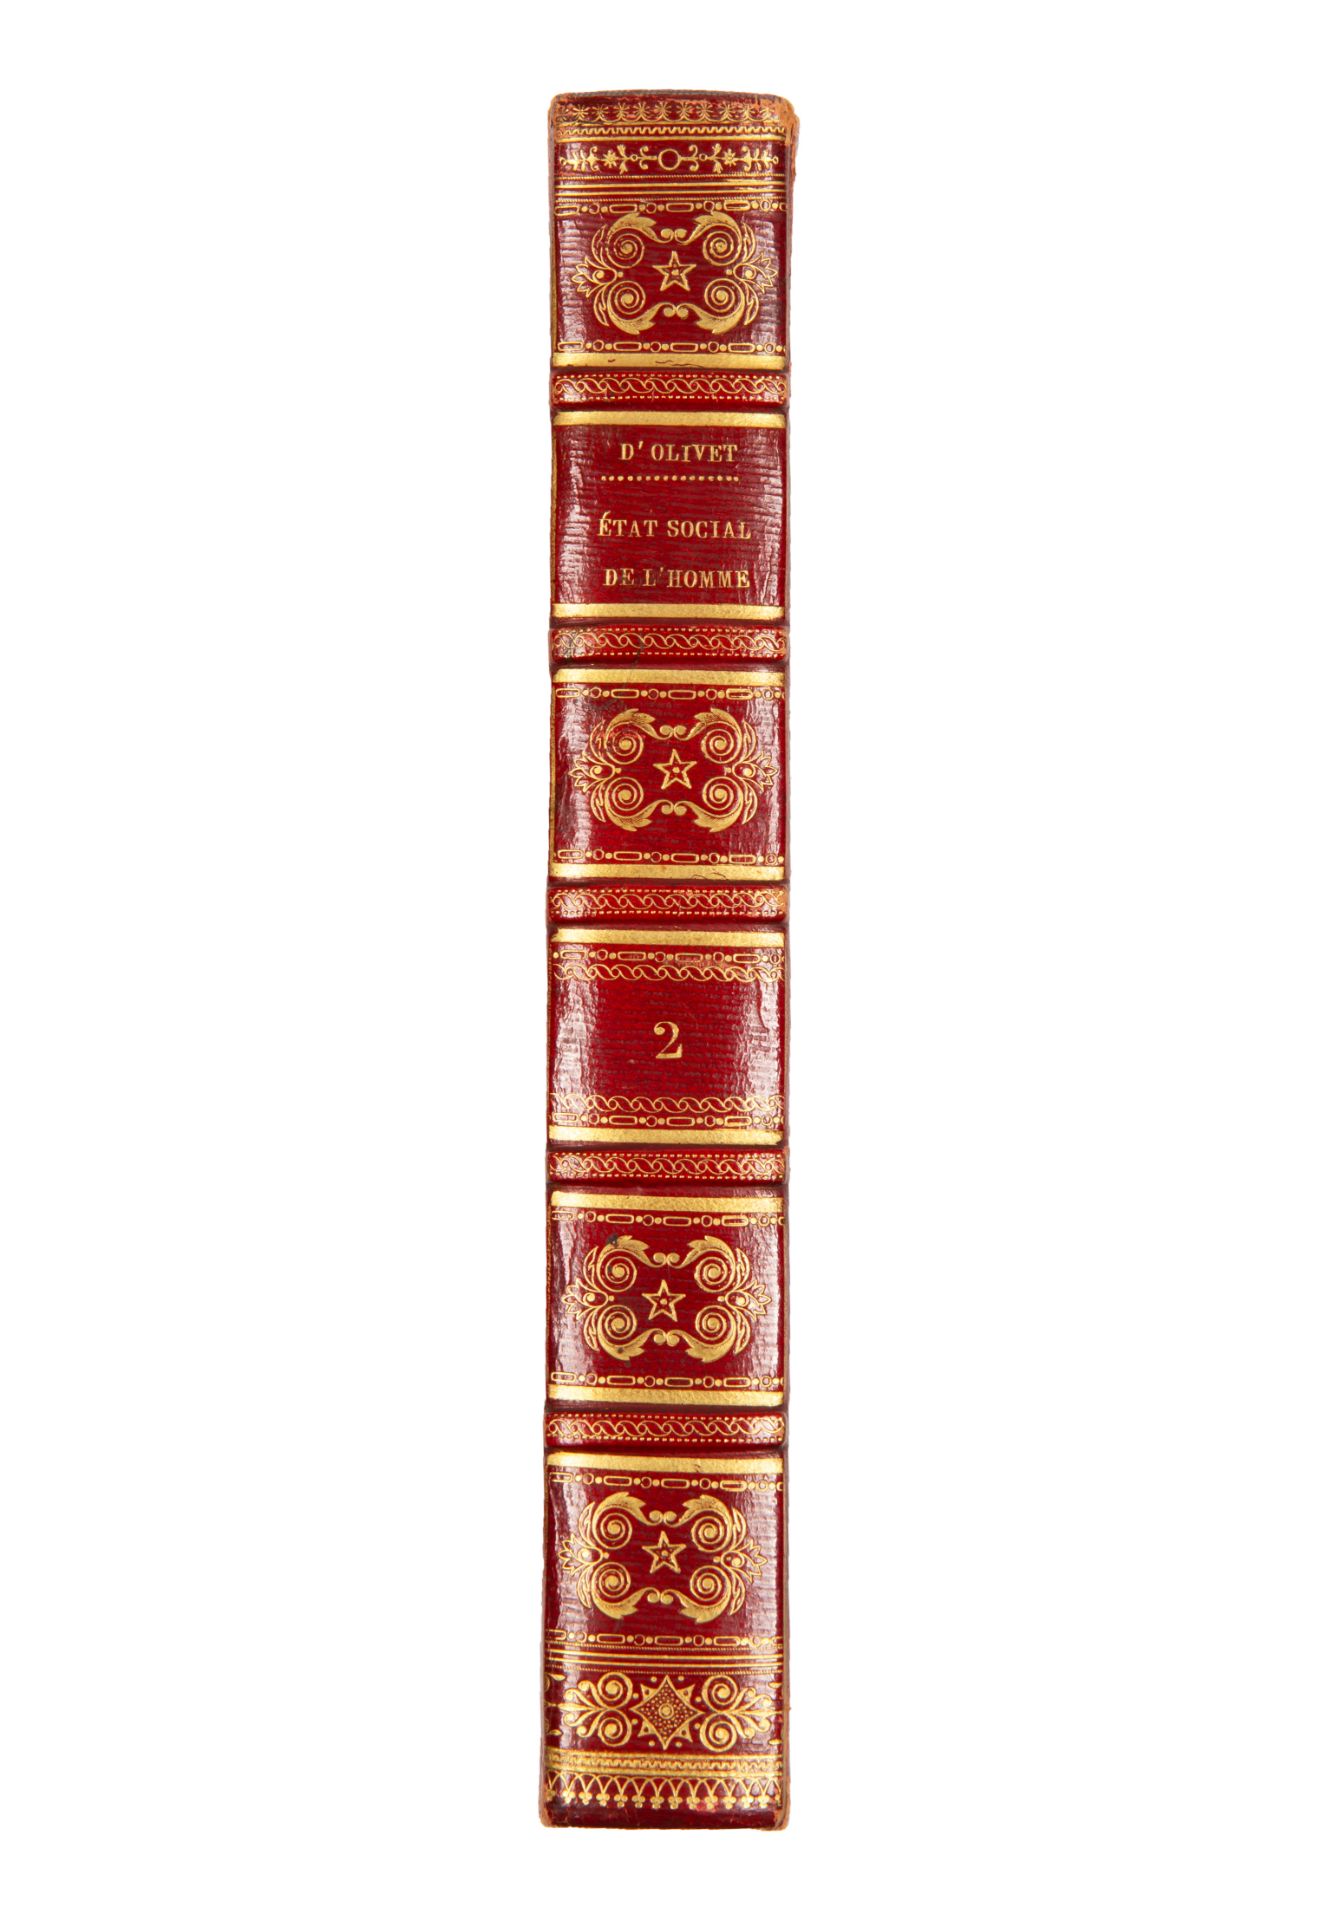 [SUPERB IMPERIAL PRESENTATION COPY] FABRE D’OLIVET, DE L’ETAT SOCIAL DE L’HOMME, 1822 - Image 6 of 12